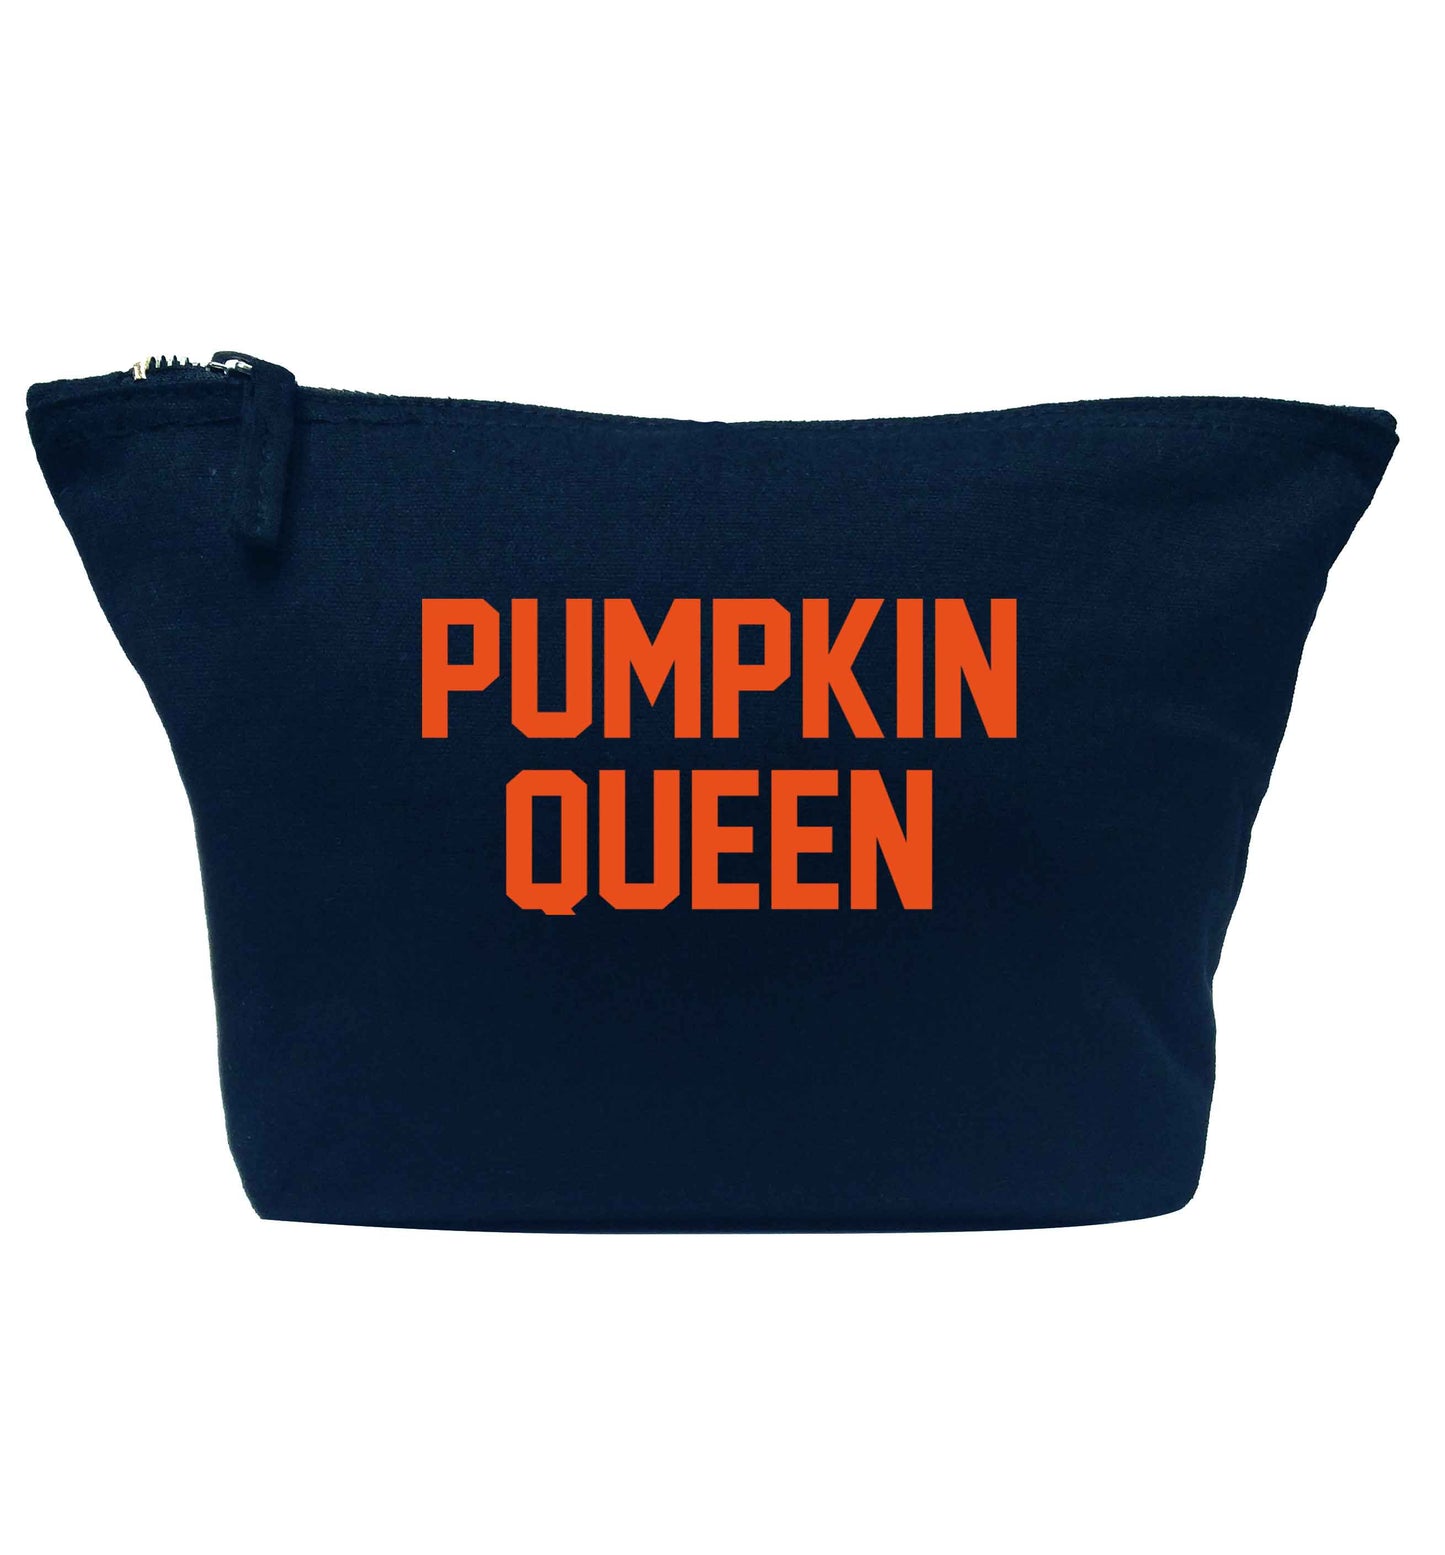 Pumpkin Queen navy makeup bag